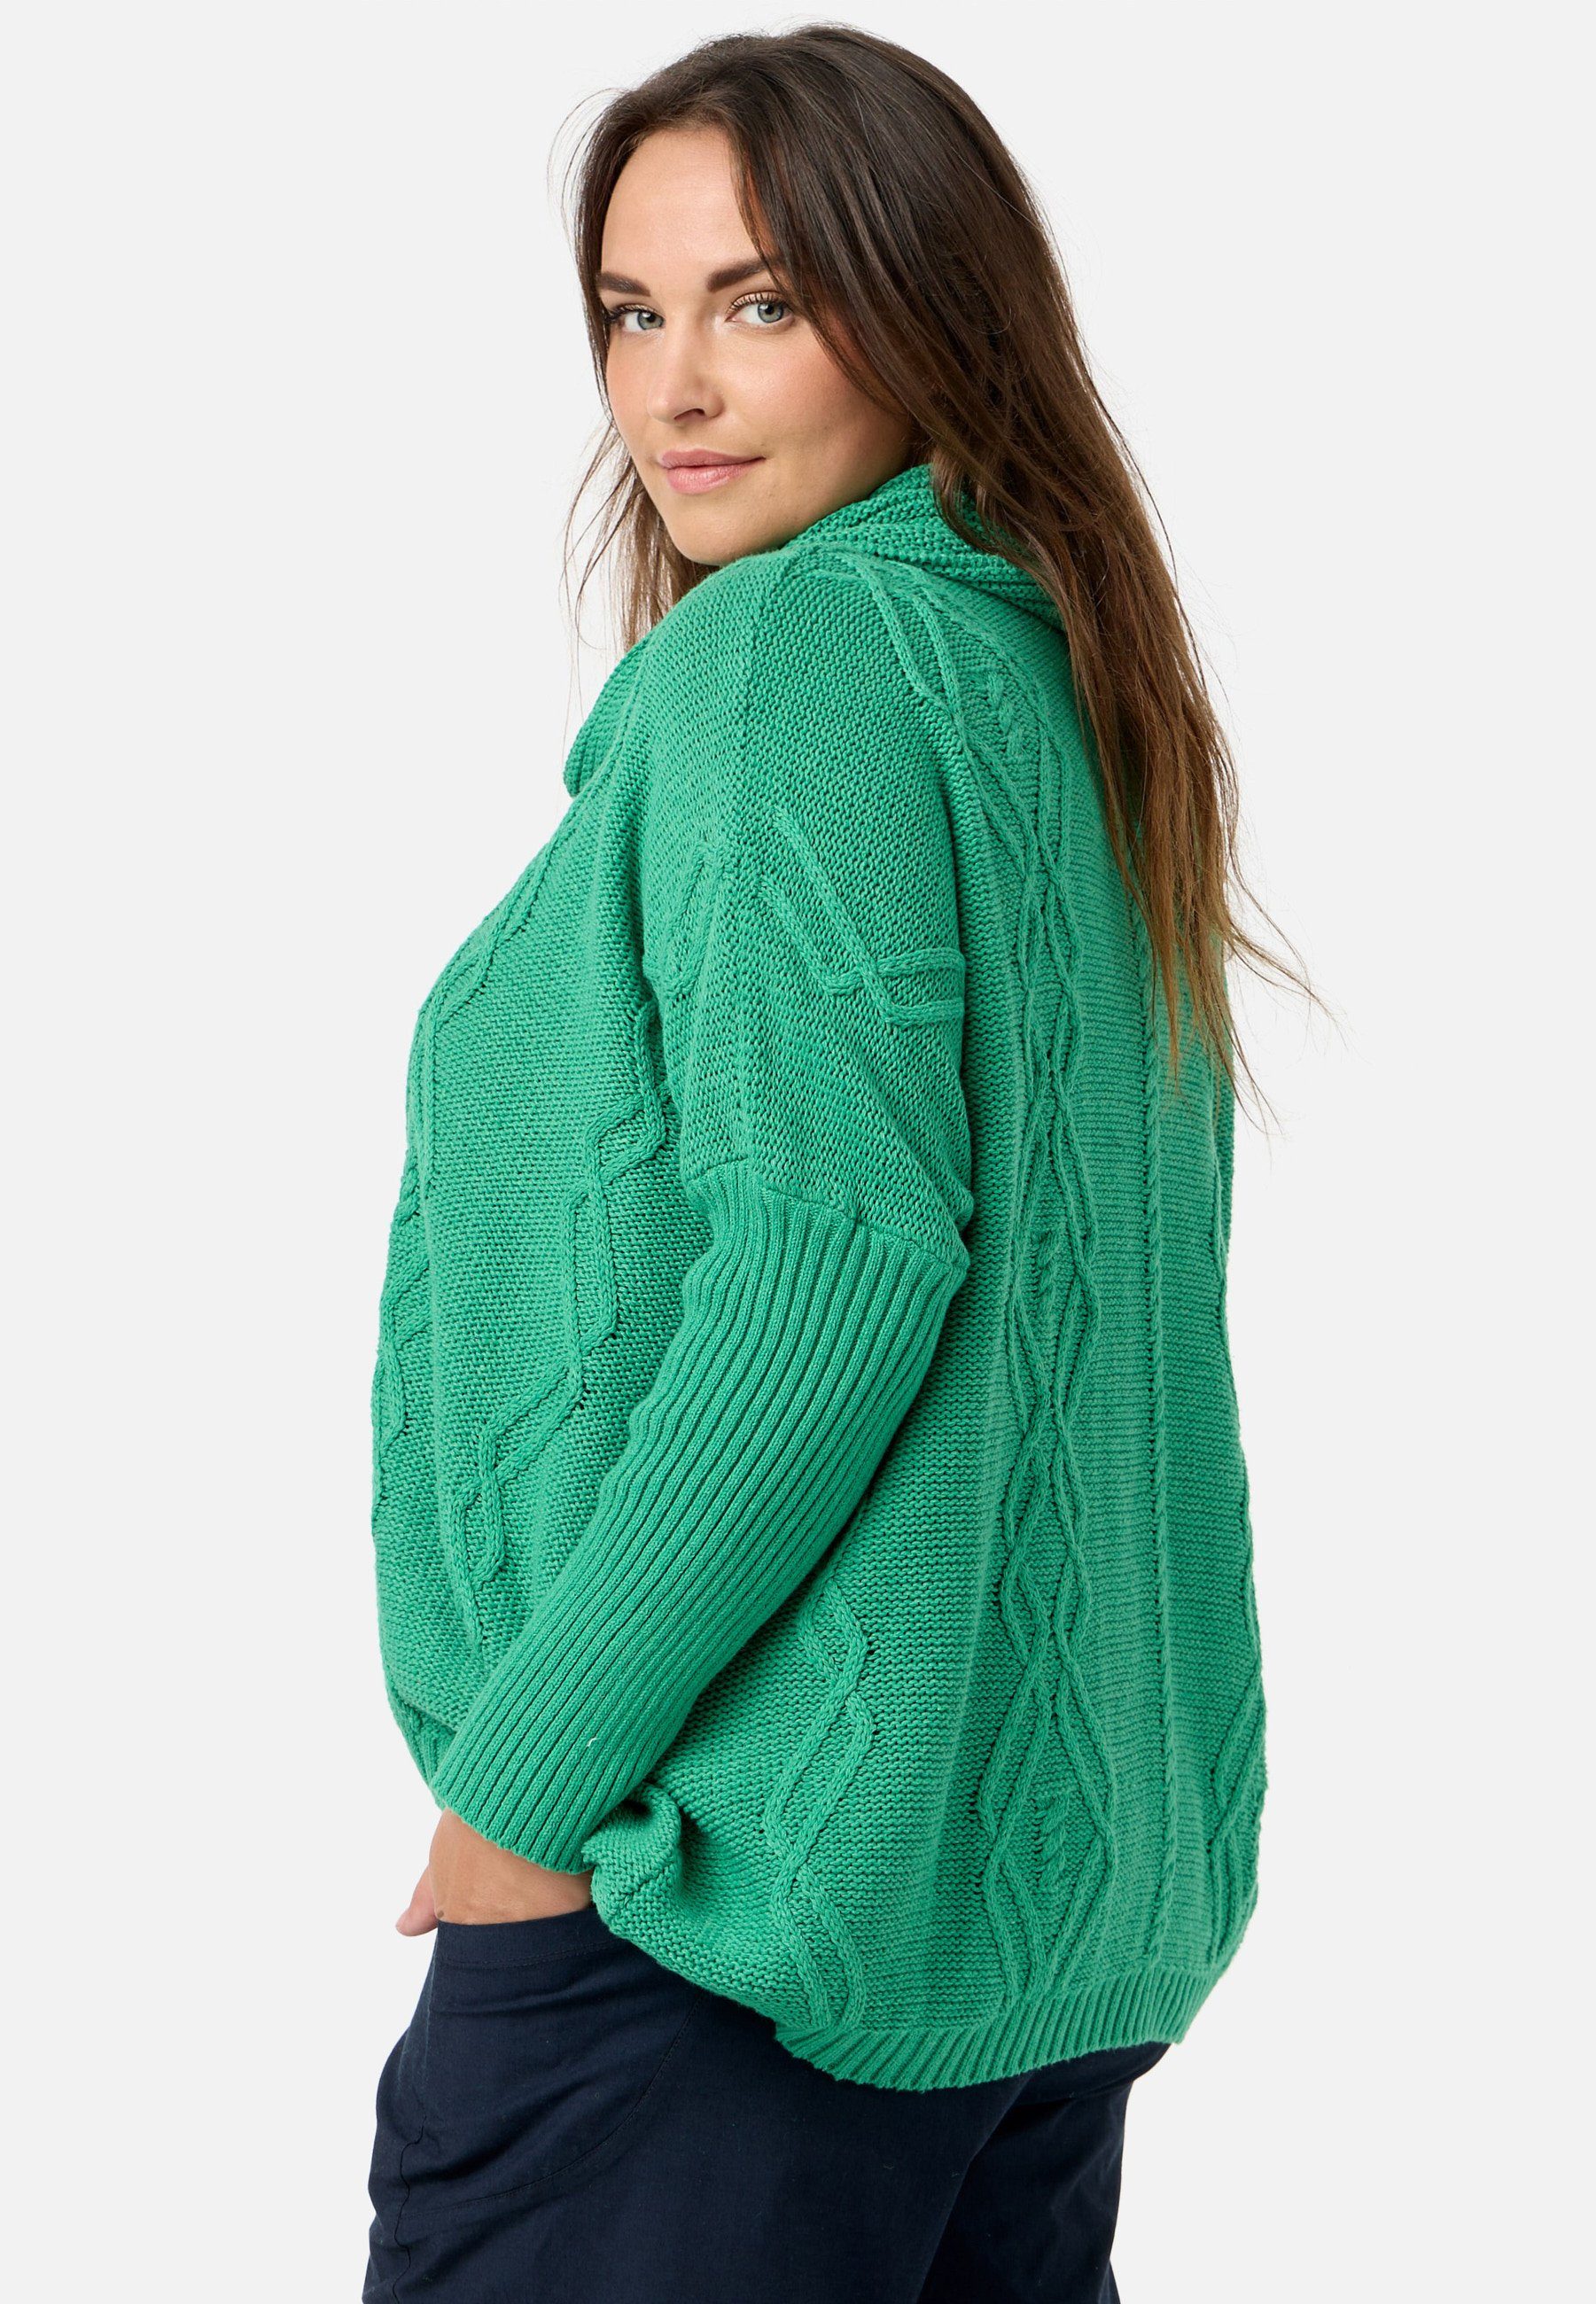 Kekoo Strickpullover aus Smaragd Baumwolle Schalkragen 100% 'Pure' Poncho-Shirt Strick mit